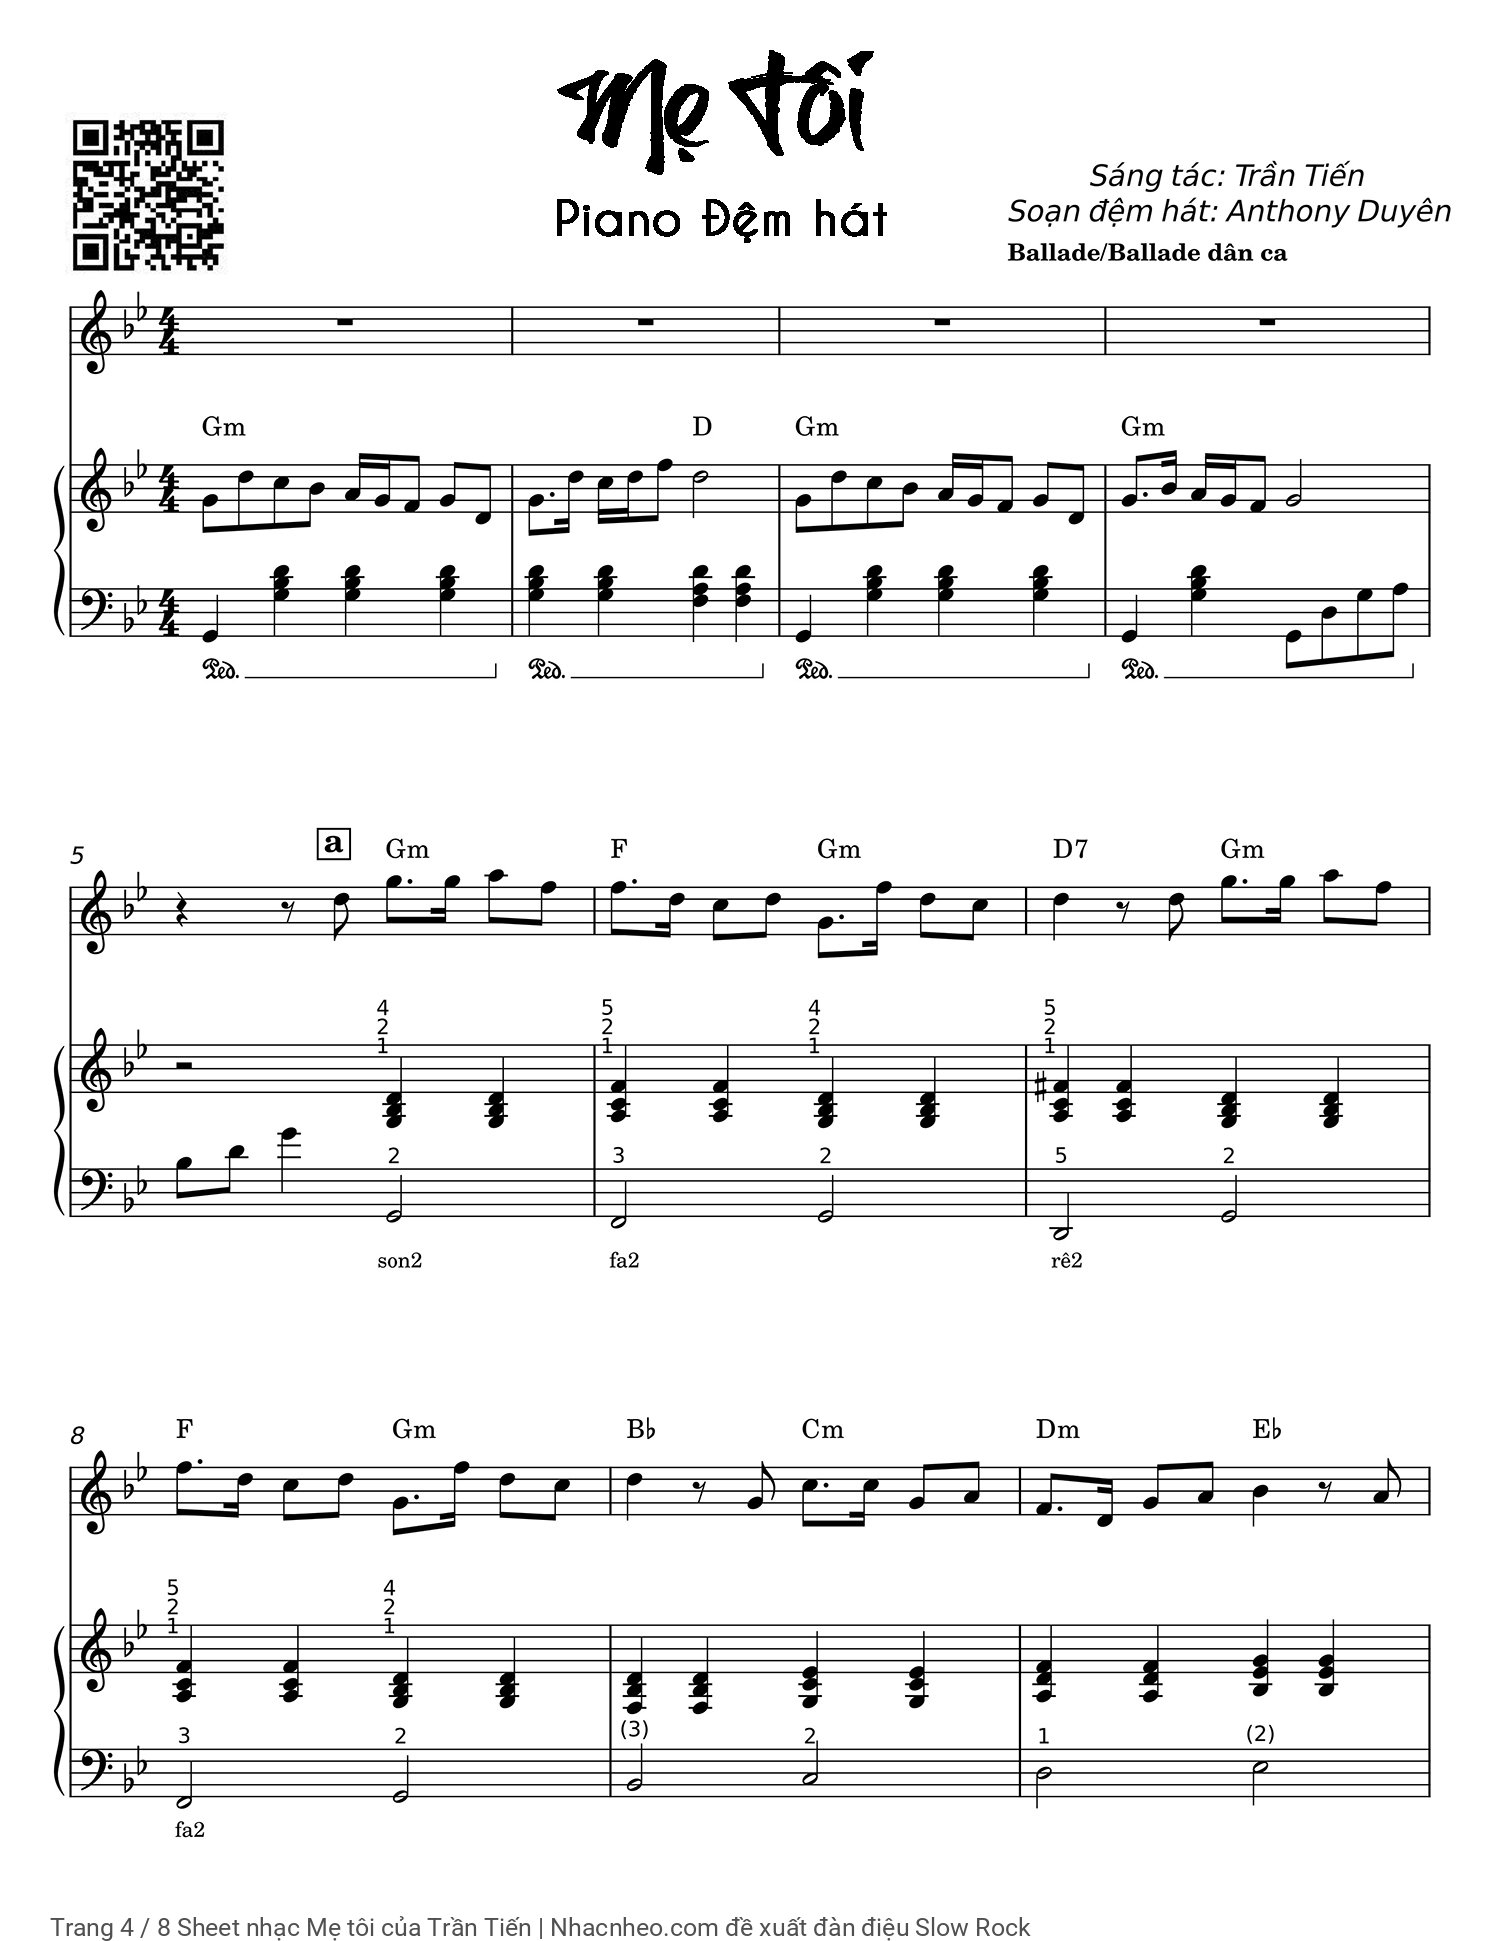 Trang 4 của Sheet nhạc PDF Piano bài hát Mẹ tôi - Trần Tiến